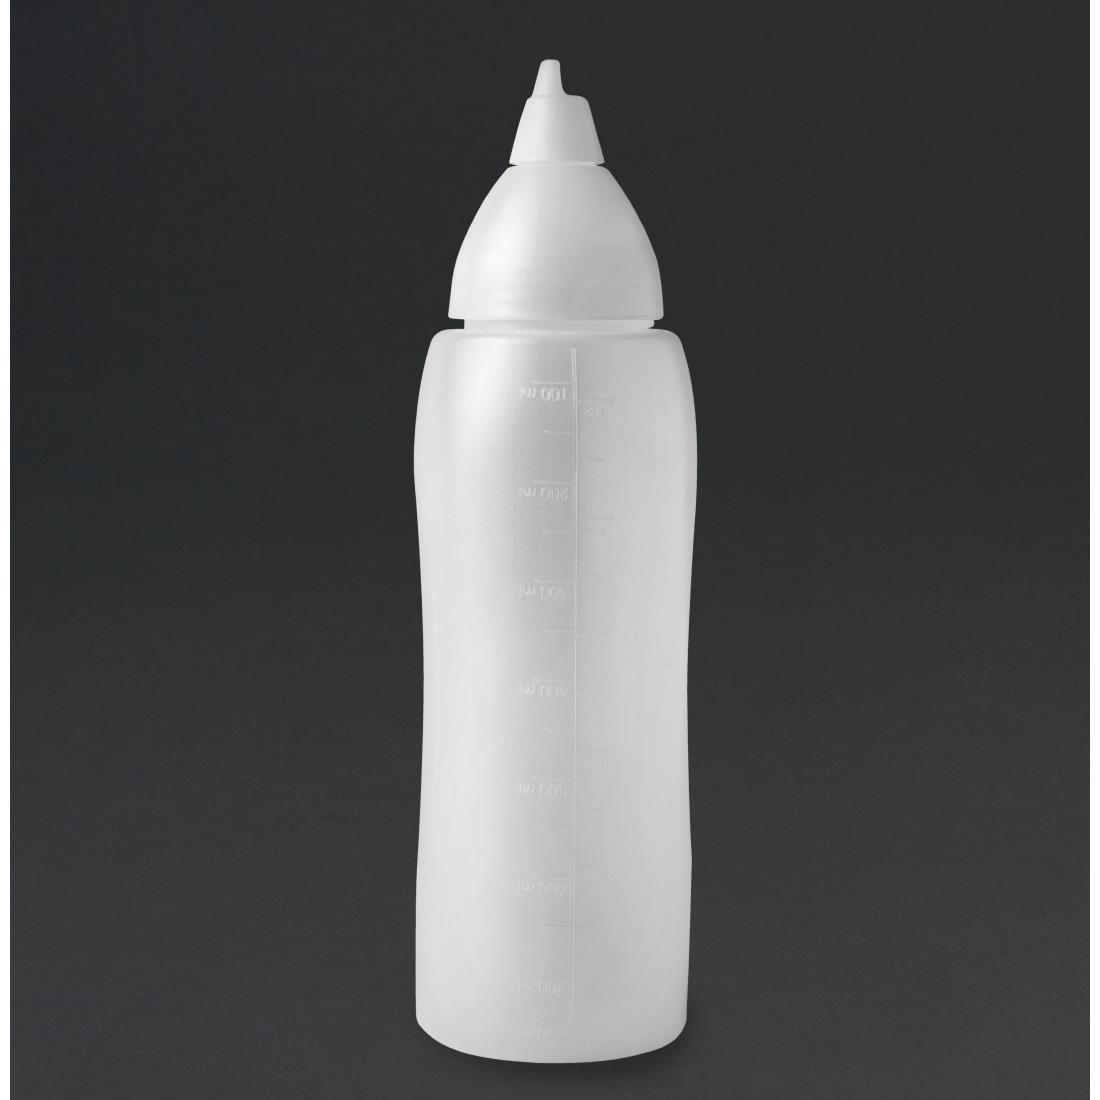 Araven Clear Non-Drip Sauce Bottle 24oz - CW113  - 1